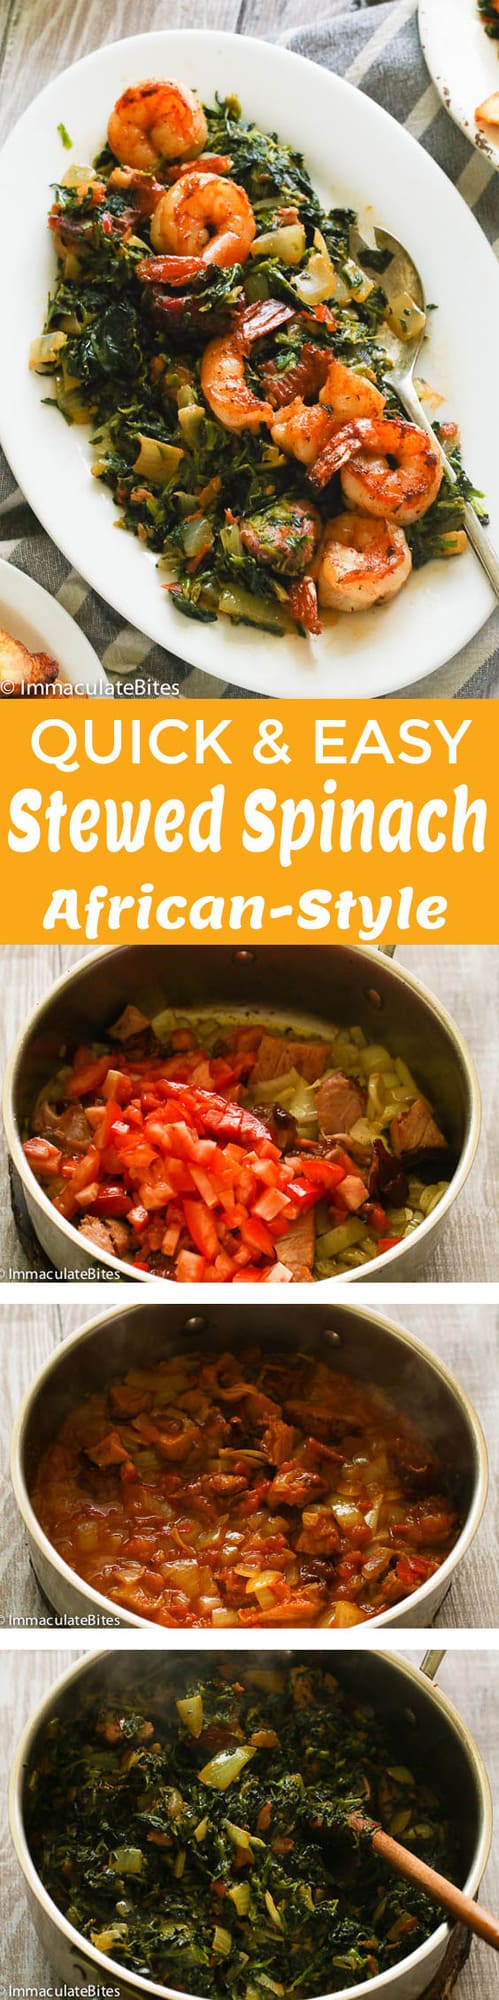 stewed spinach